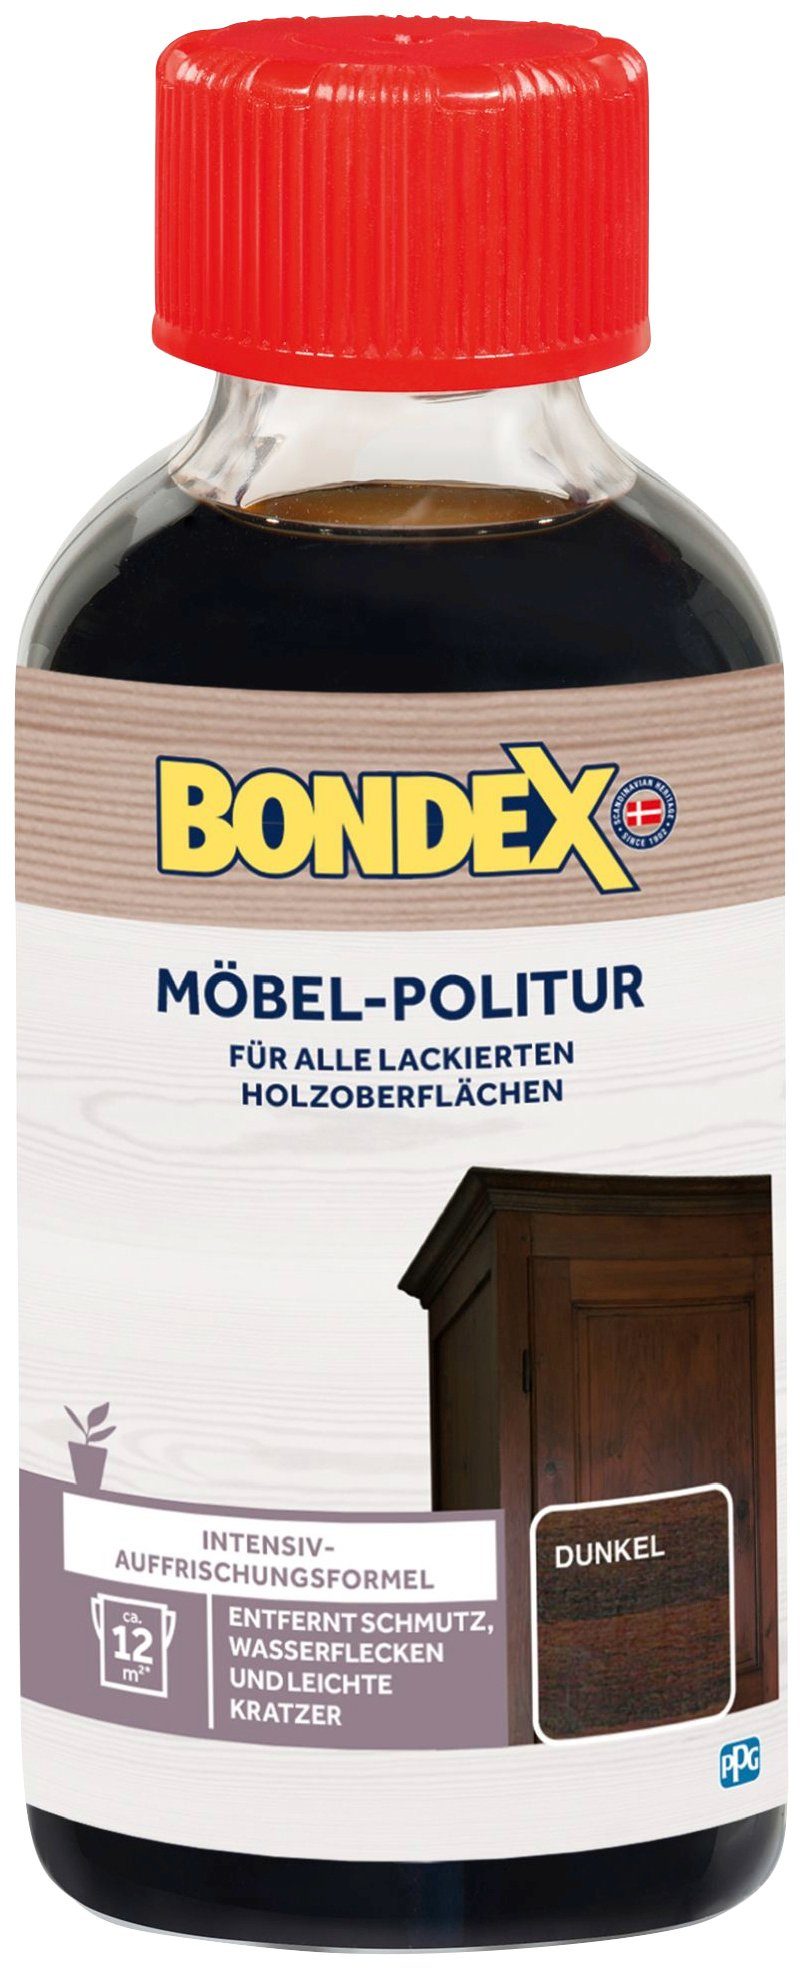 Bondex MÖBEL-POLITUR Dunkel Holzpflegeöl, 0,15 l braun